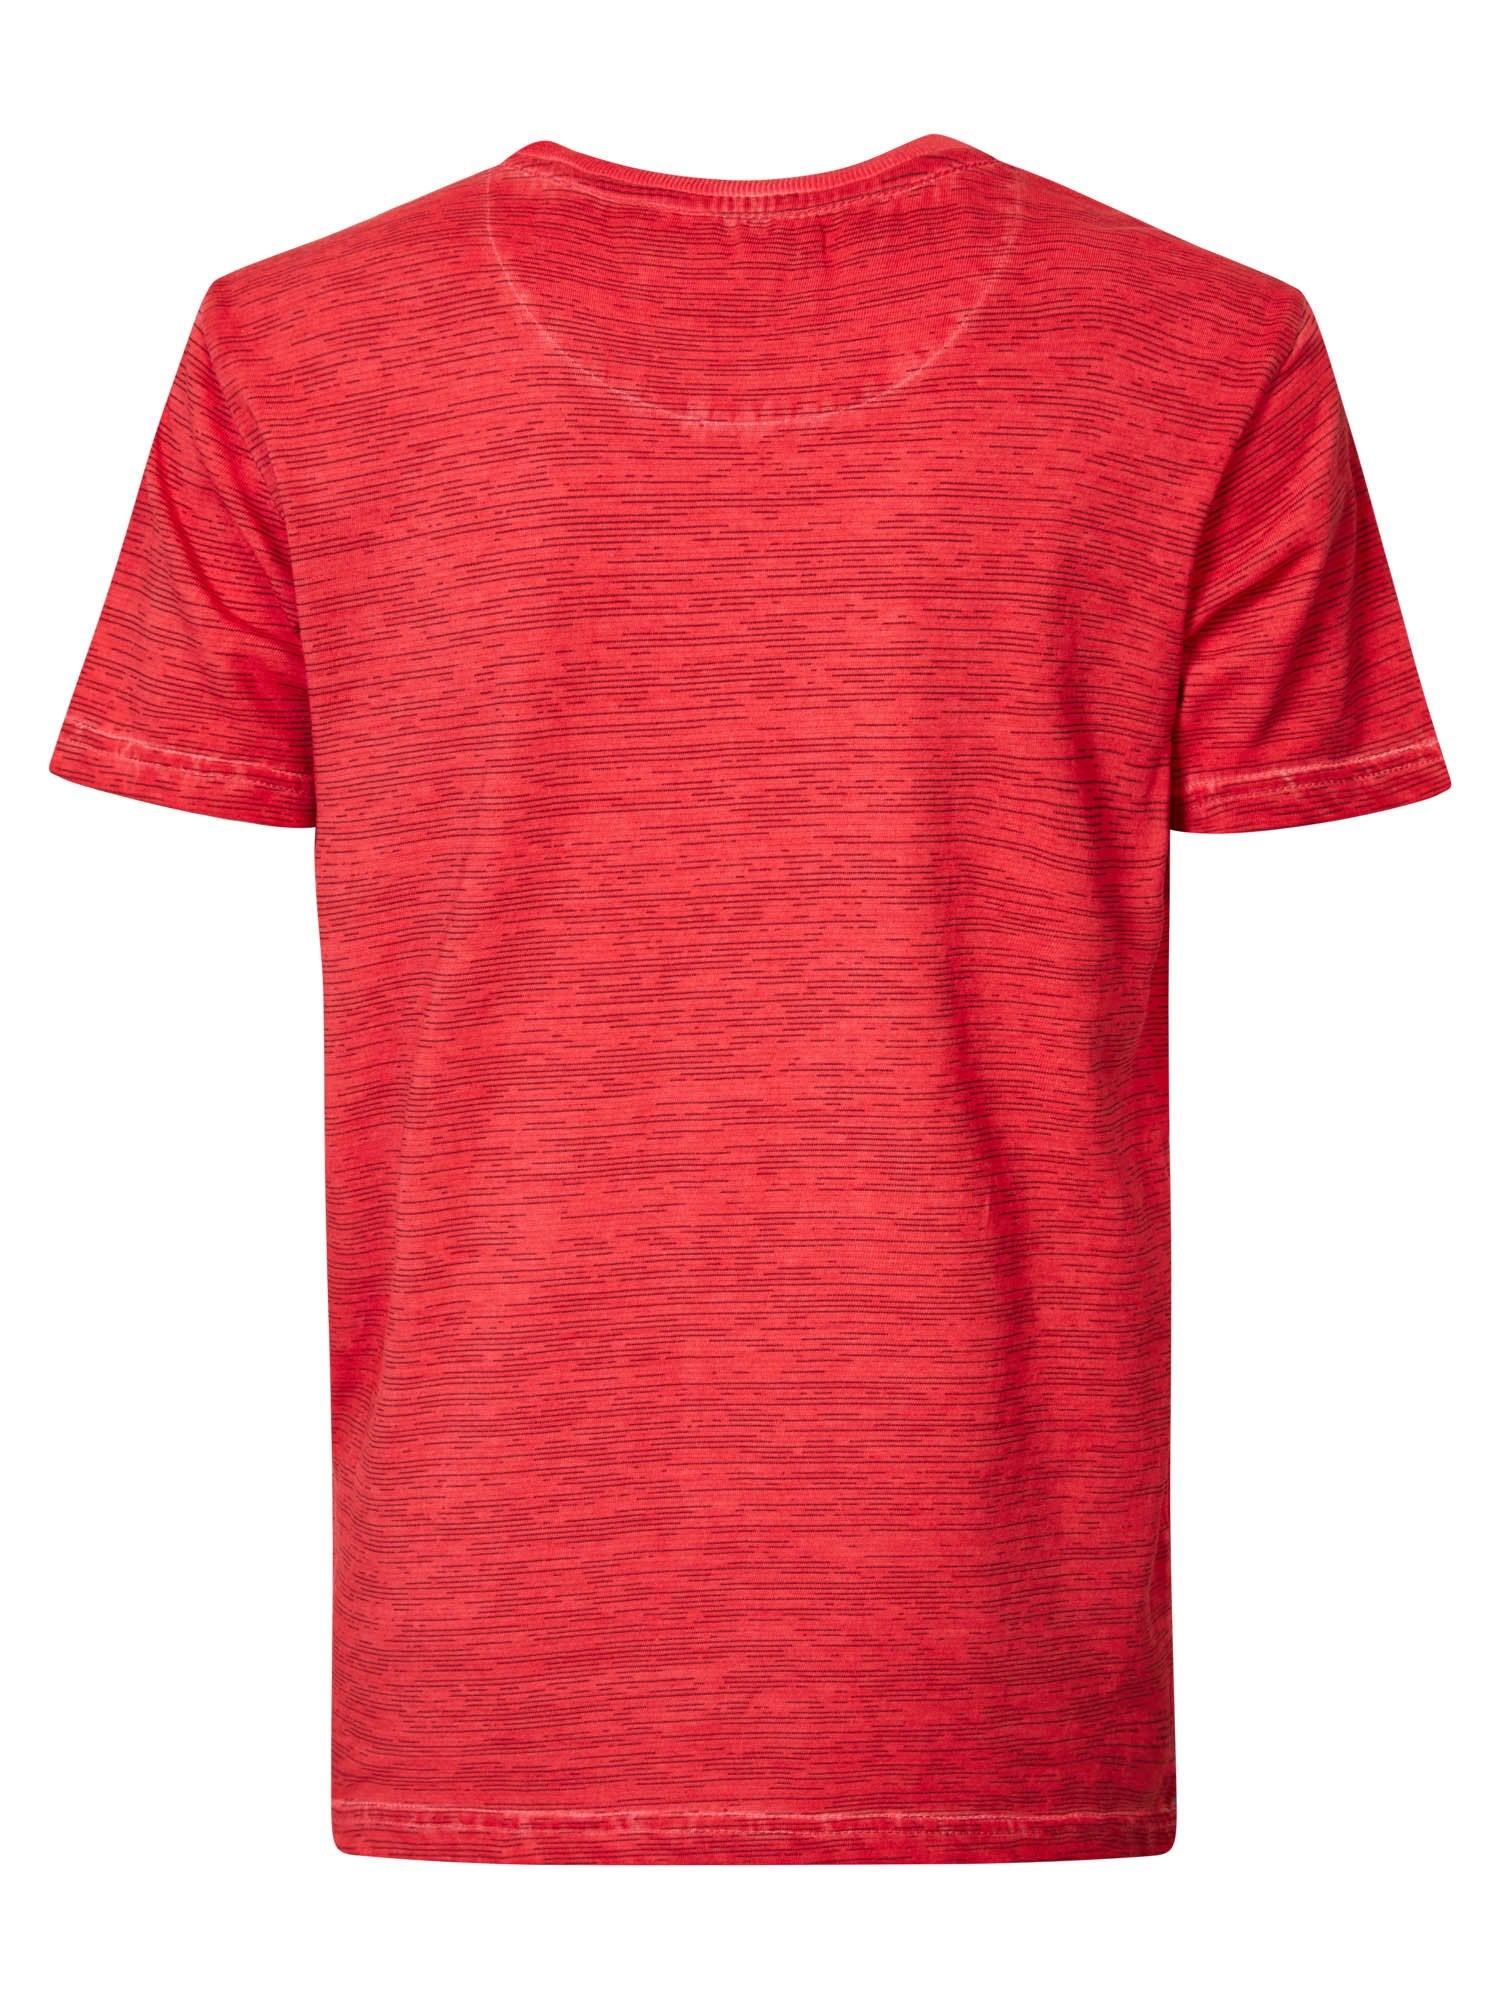 Jongens T-shirt SS R-neck Adrenaline van Petrol in de kleur Imperial Red in maat 176.